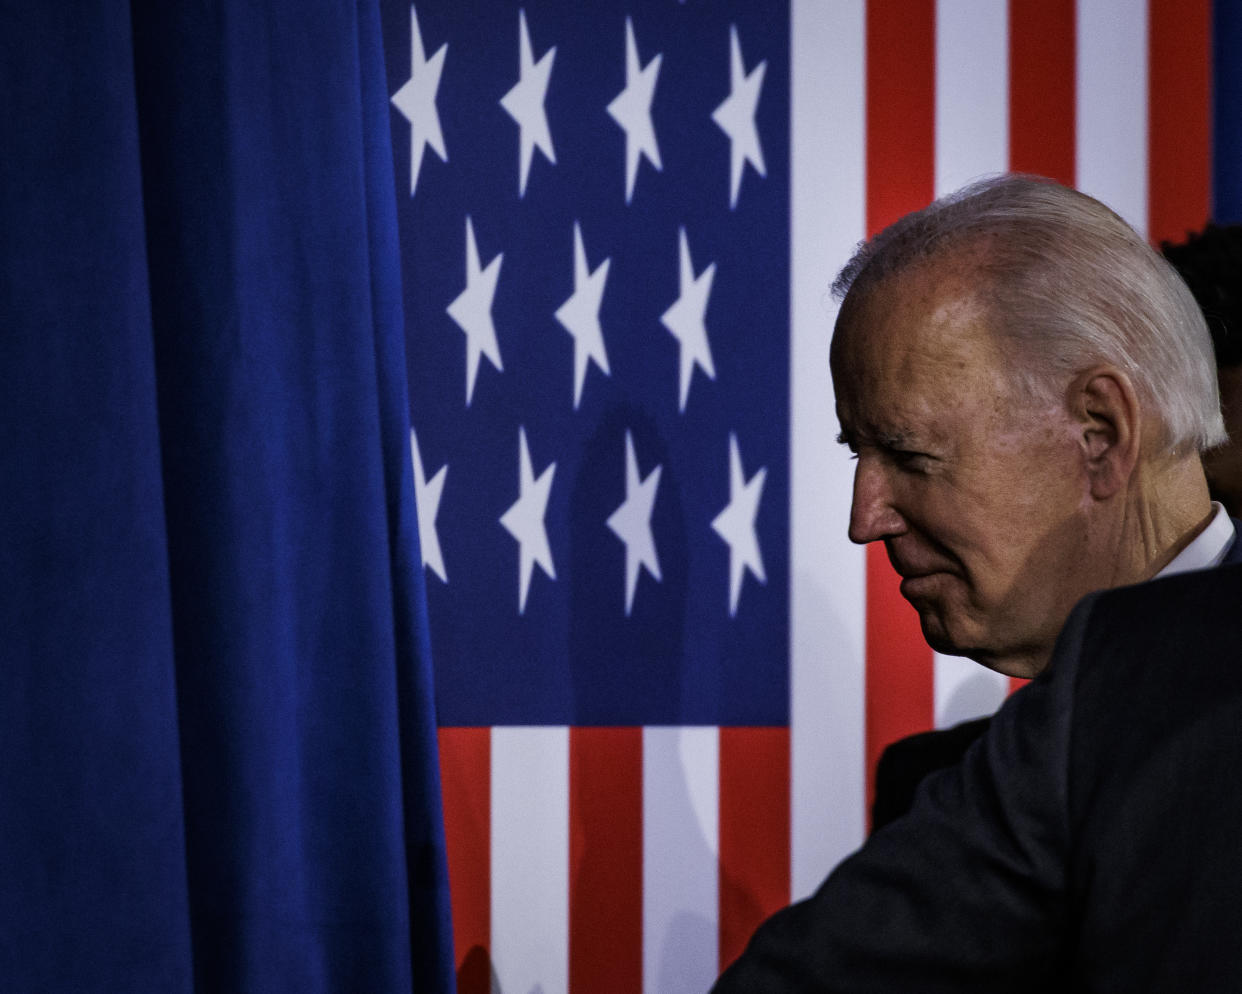 President Biden walks offstage.